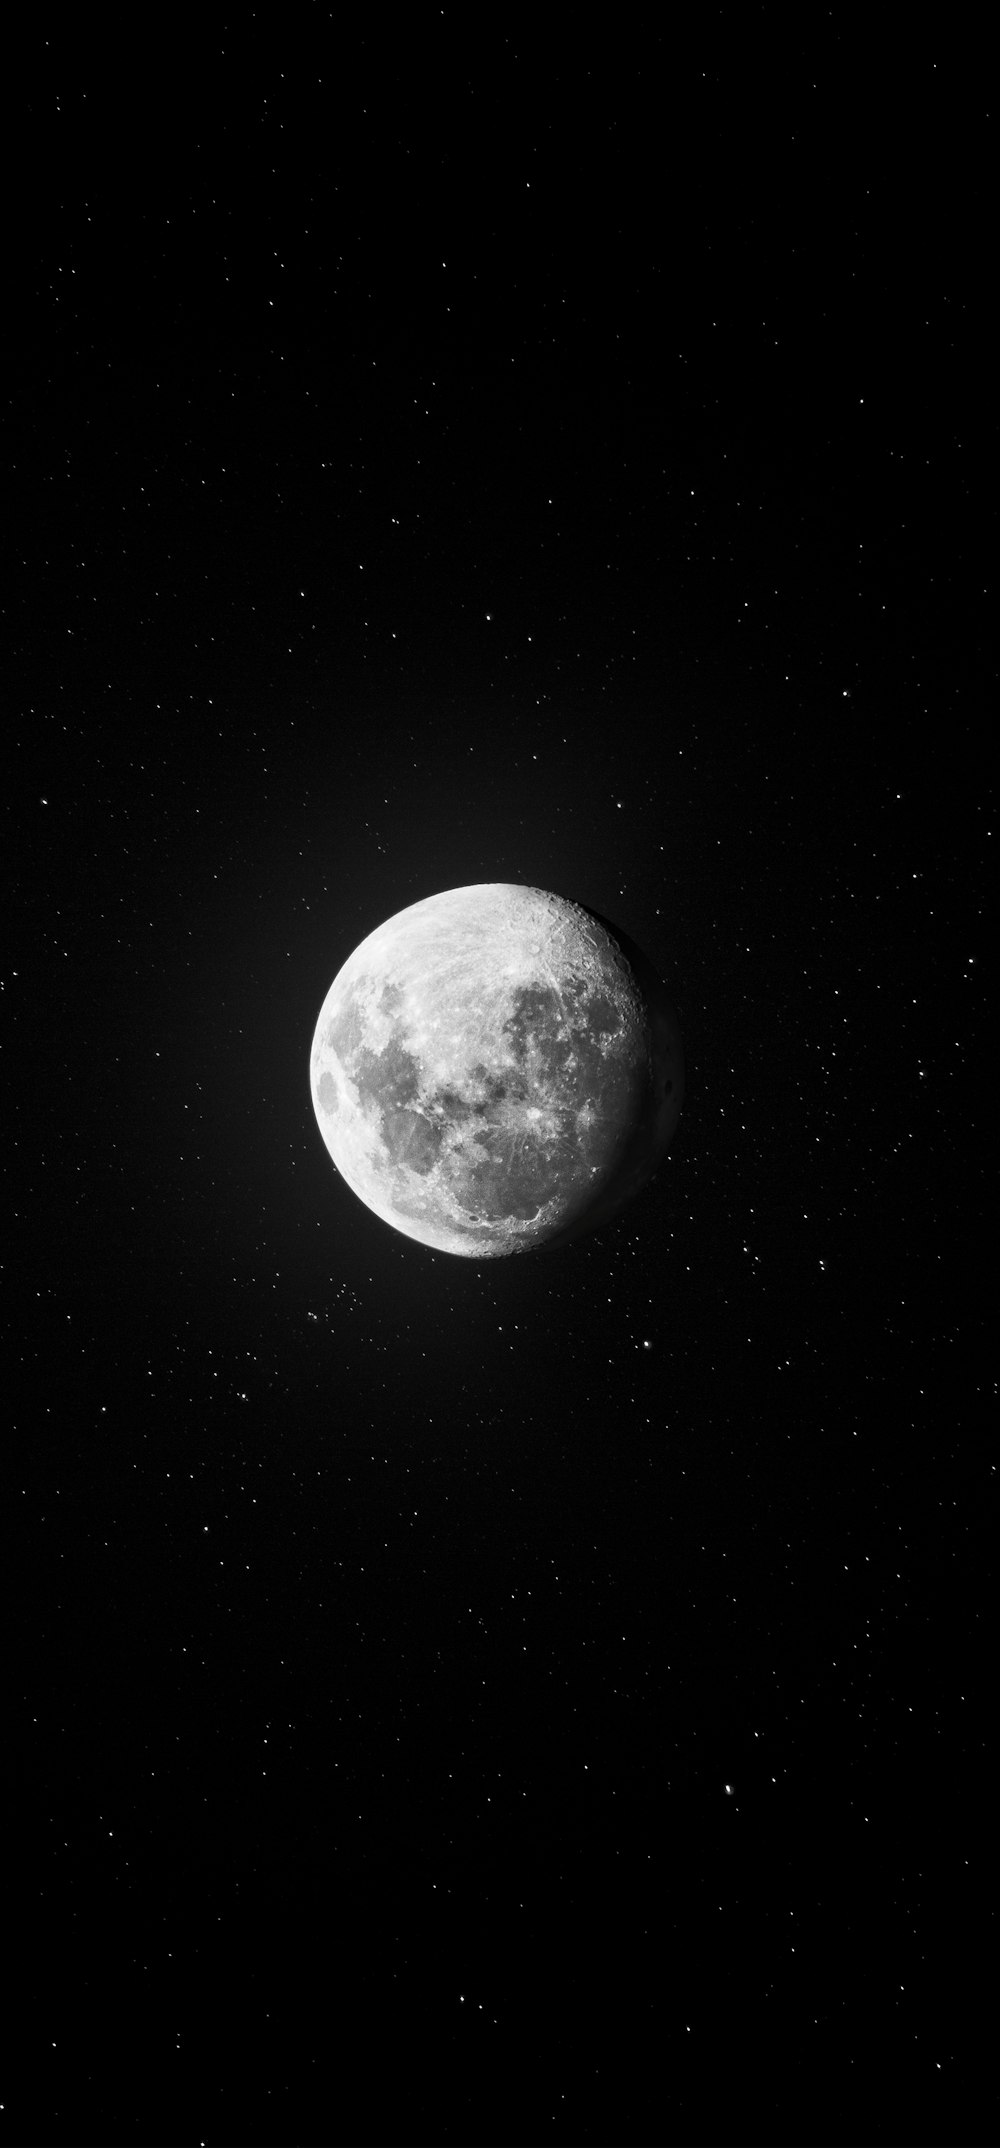 foto en escala de grises de la luna llena